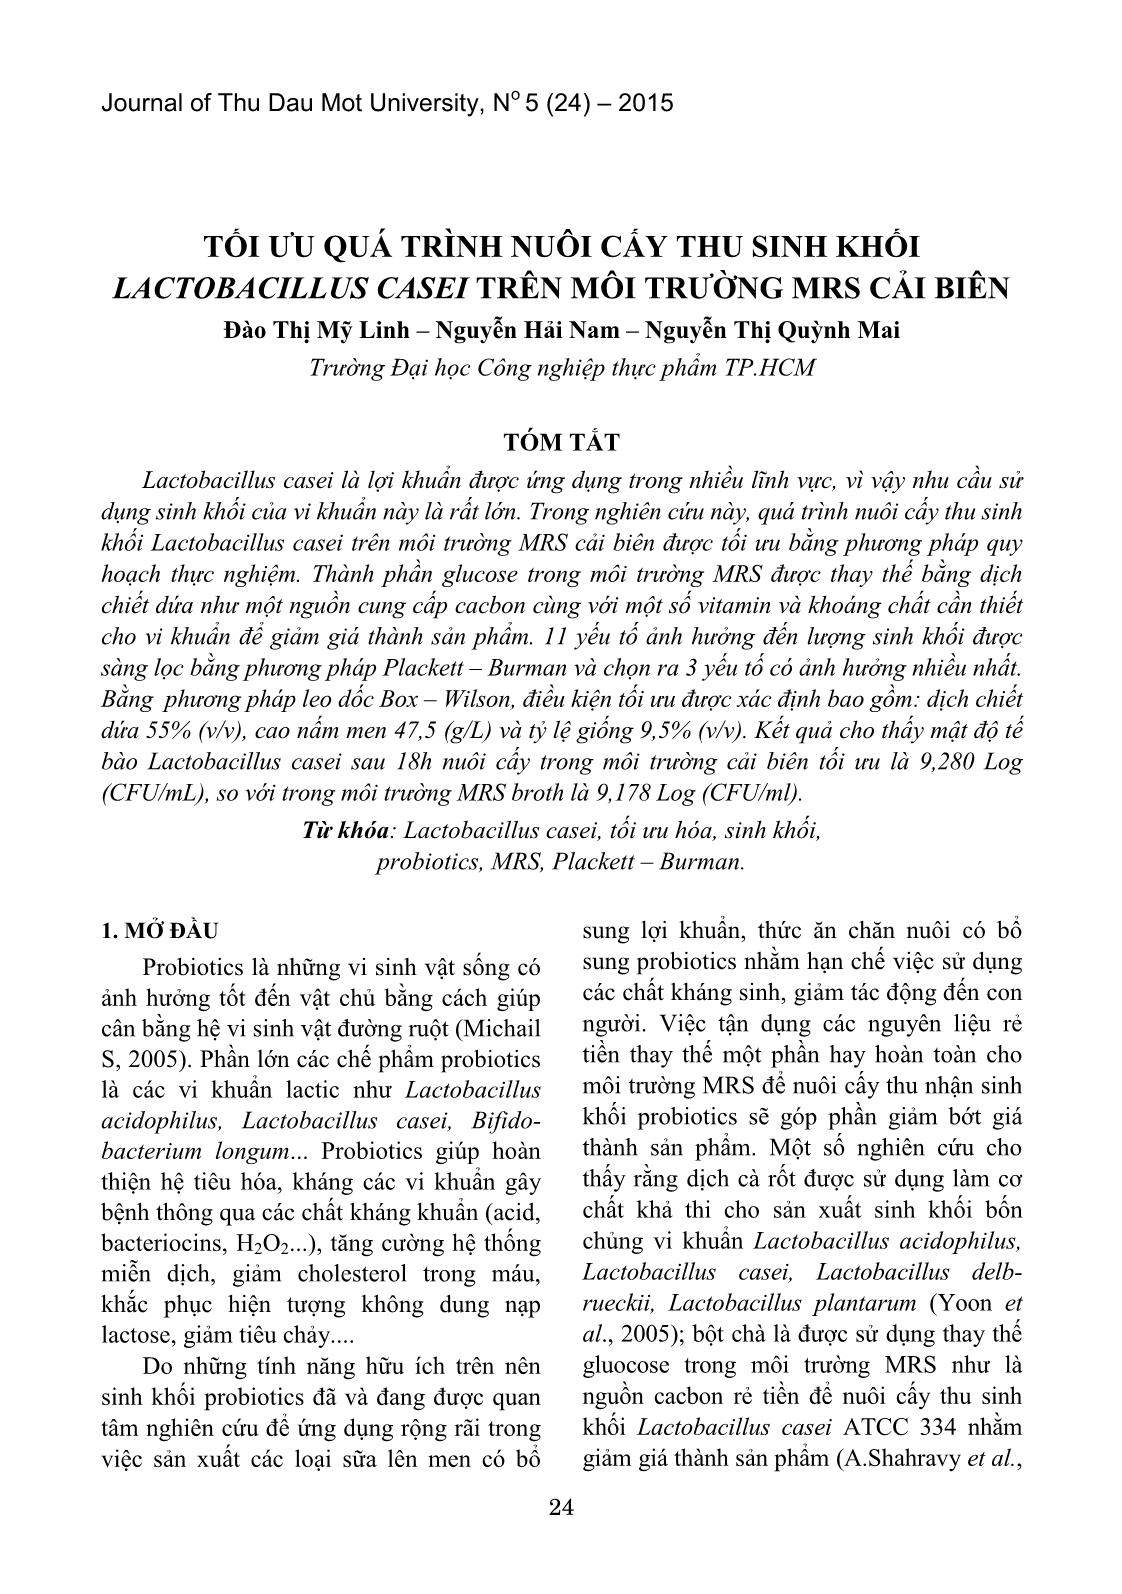 Tối ưu quá trình nuôi cấy thu sinh khối Lactobacillus Casei trên môi trường MRS cải biên trang 1